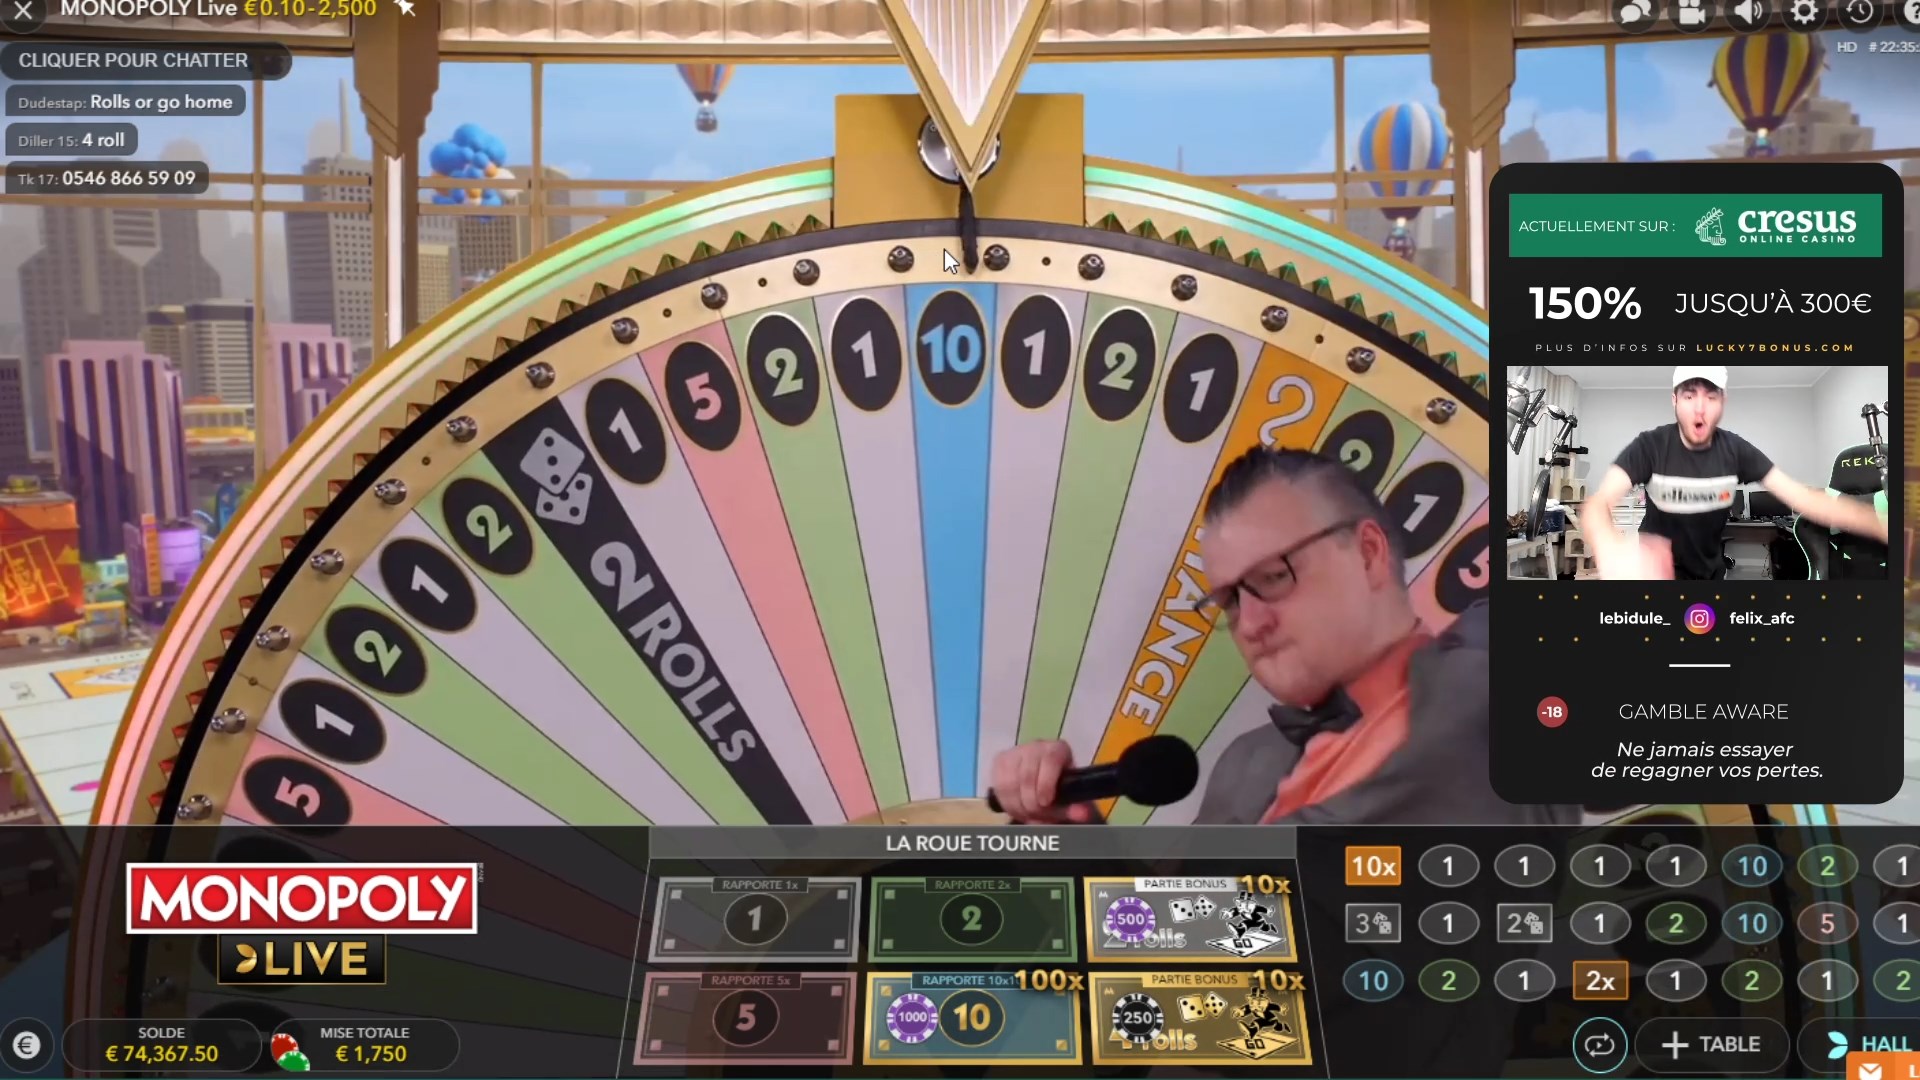 Bidule wins €100,000 at Monopoly Live